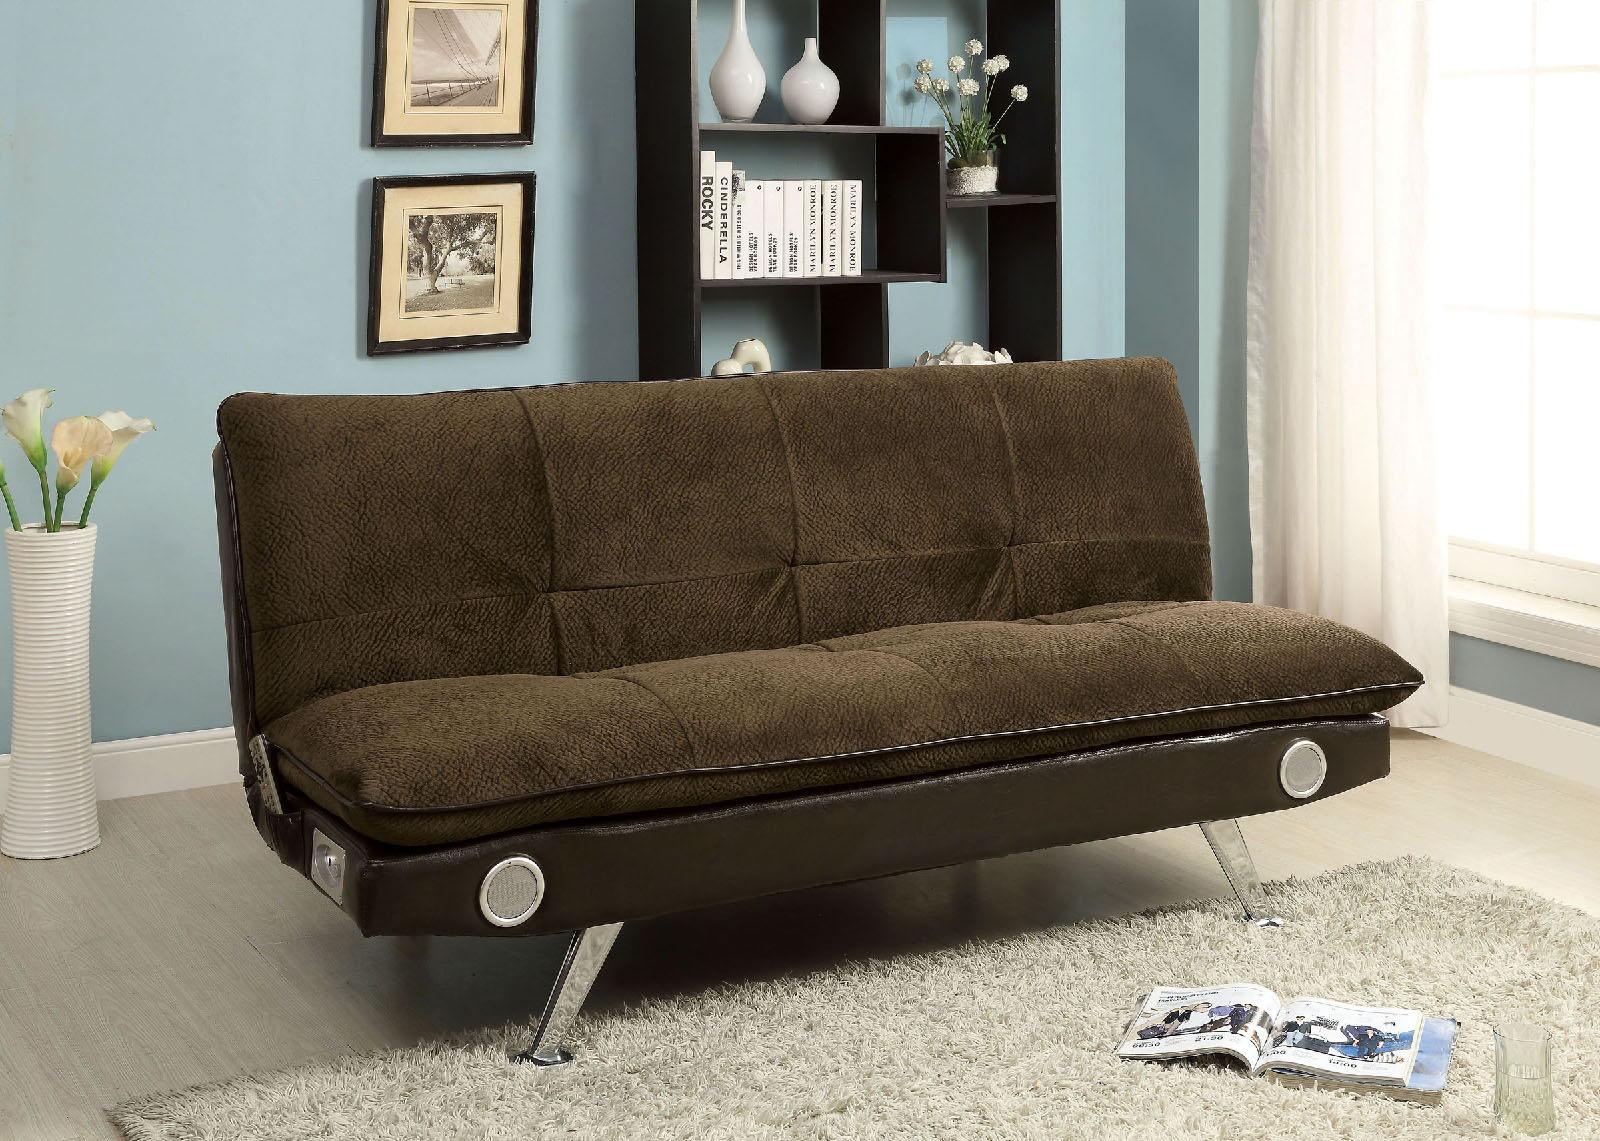 Furniture of America - Gallagher - Futon Sofa With Bluetooth Speaker - 5th Avenue Furniture